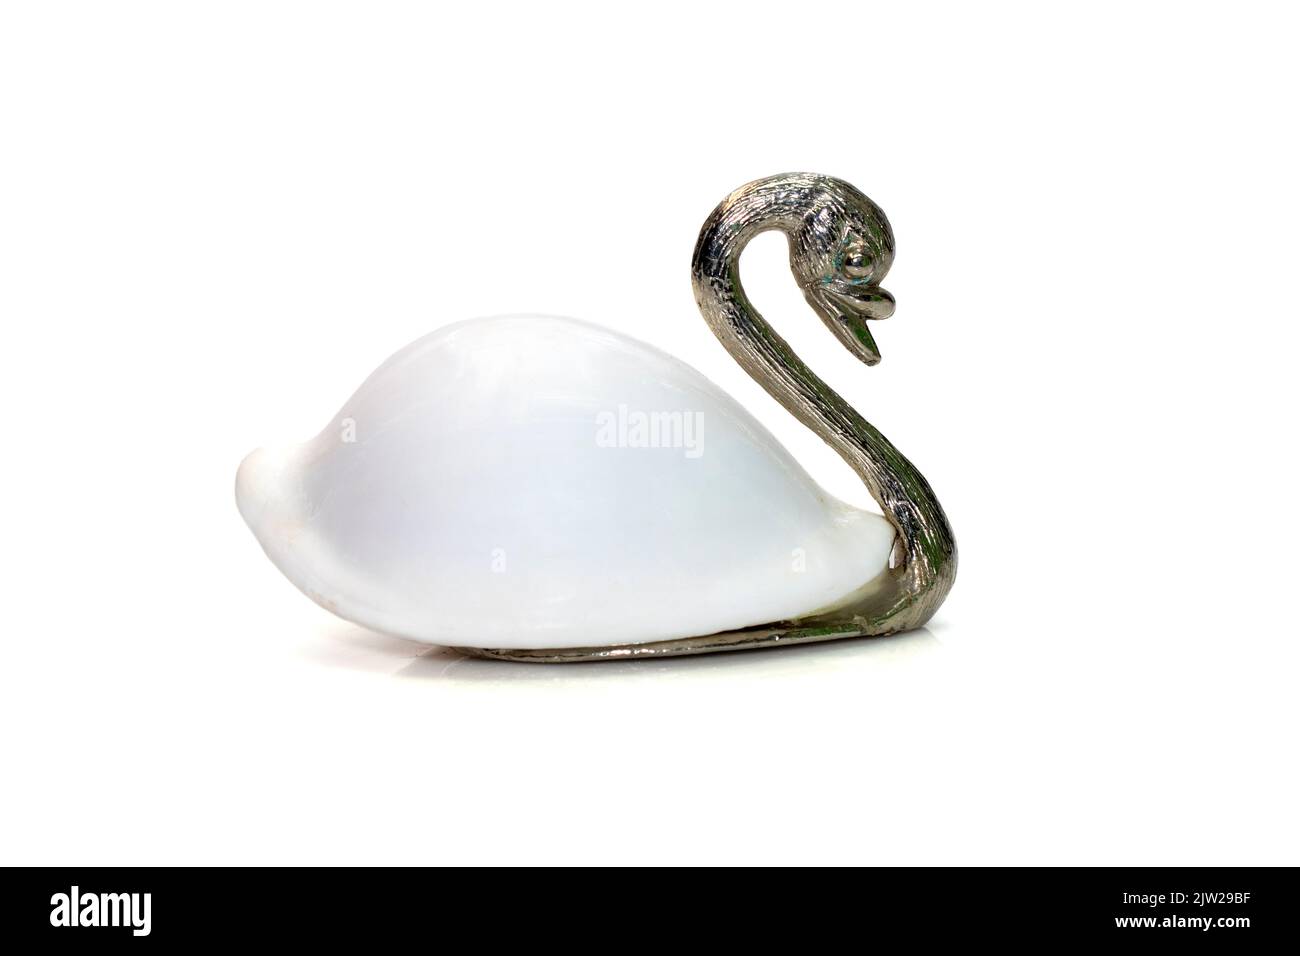 Image de la sculpture de cygne avec des coquilles blanches (Ovula ovum) comme partie de son corps. Isolé sur fond blanc. Décoration d'intérieur. Banque D'Images